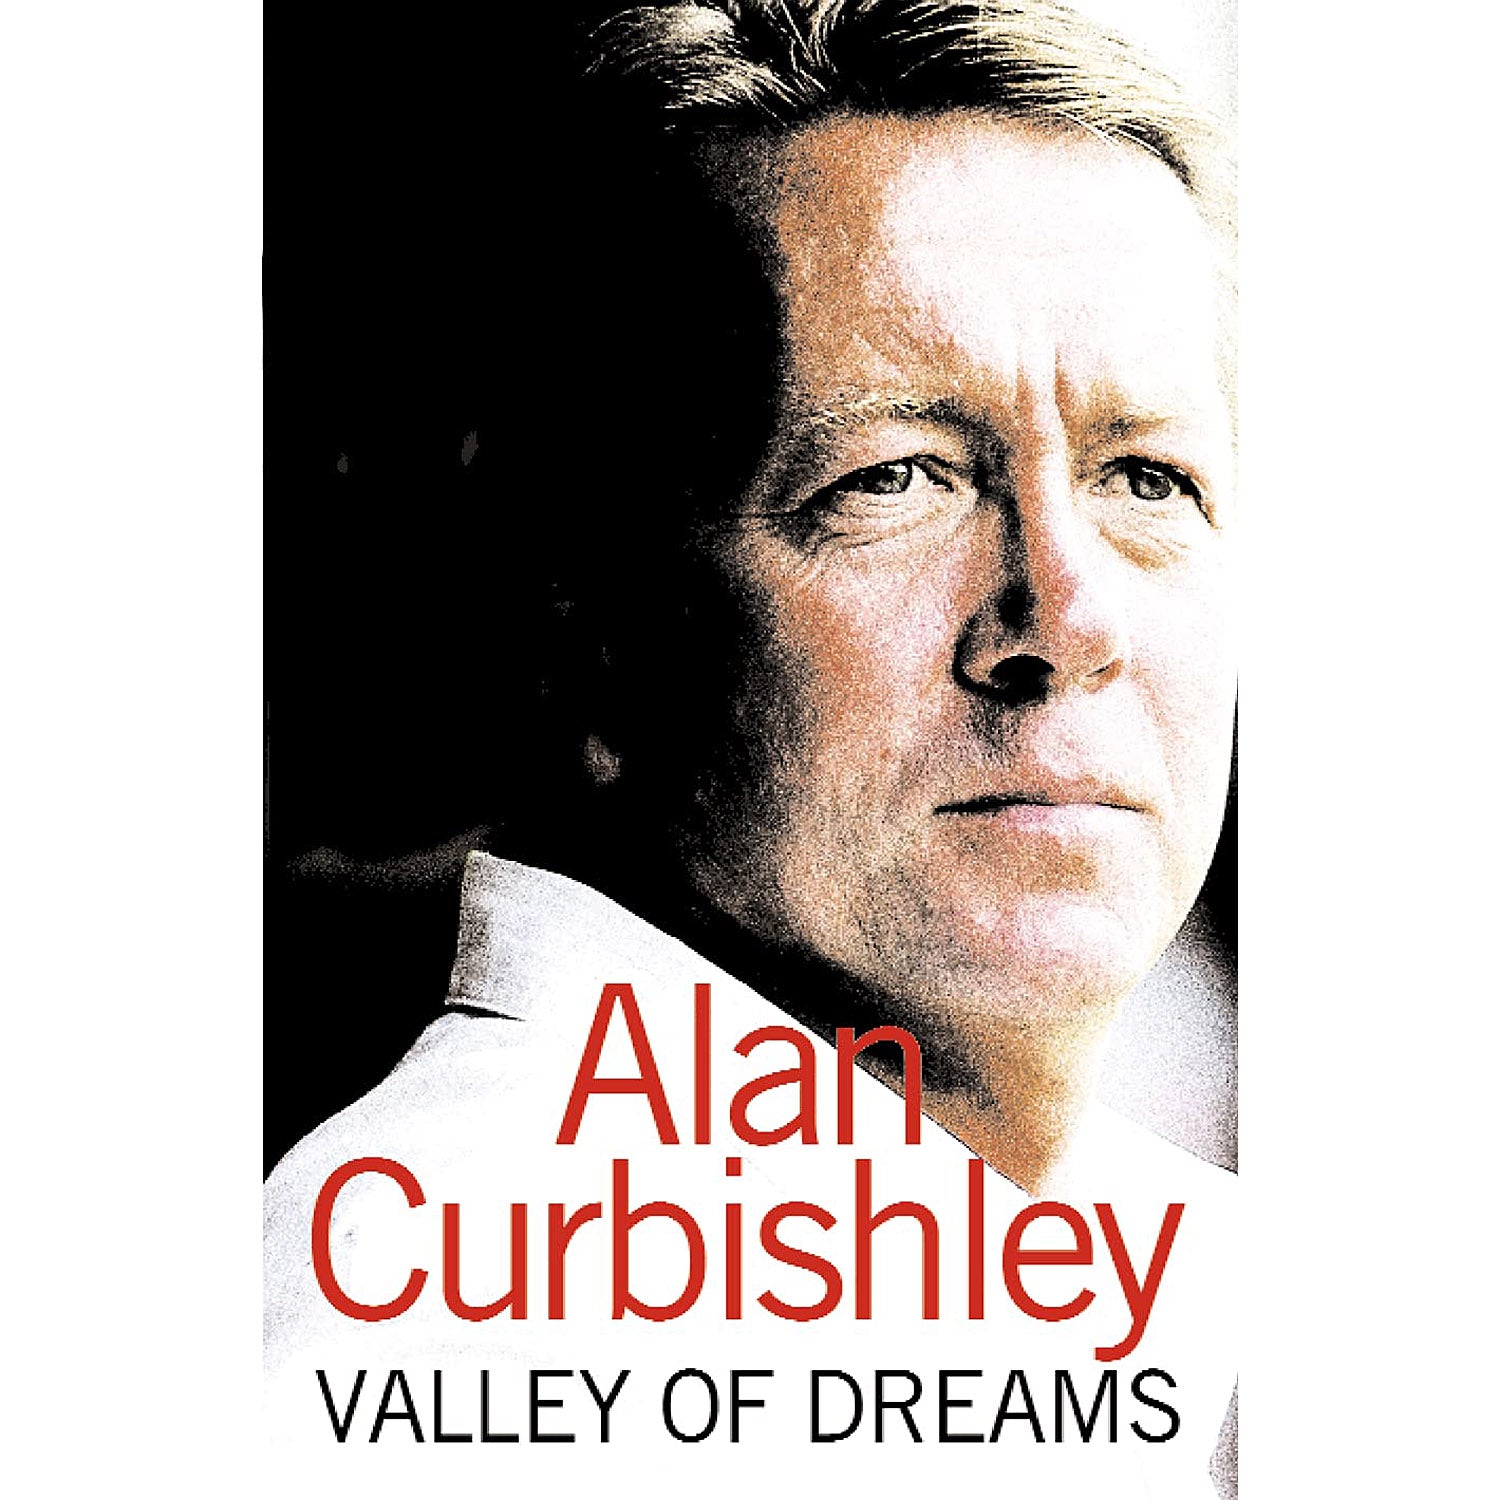 Alan Curbishley – Valley of Dreams